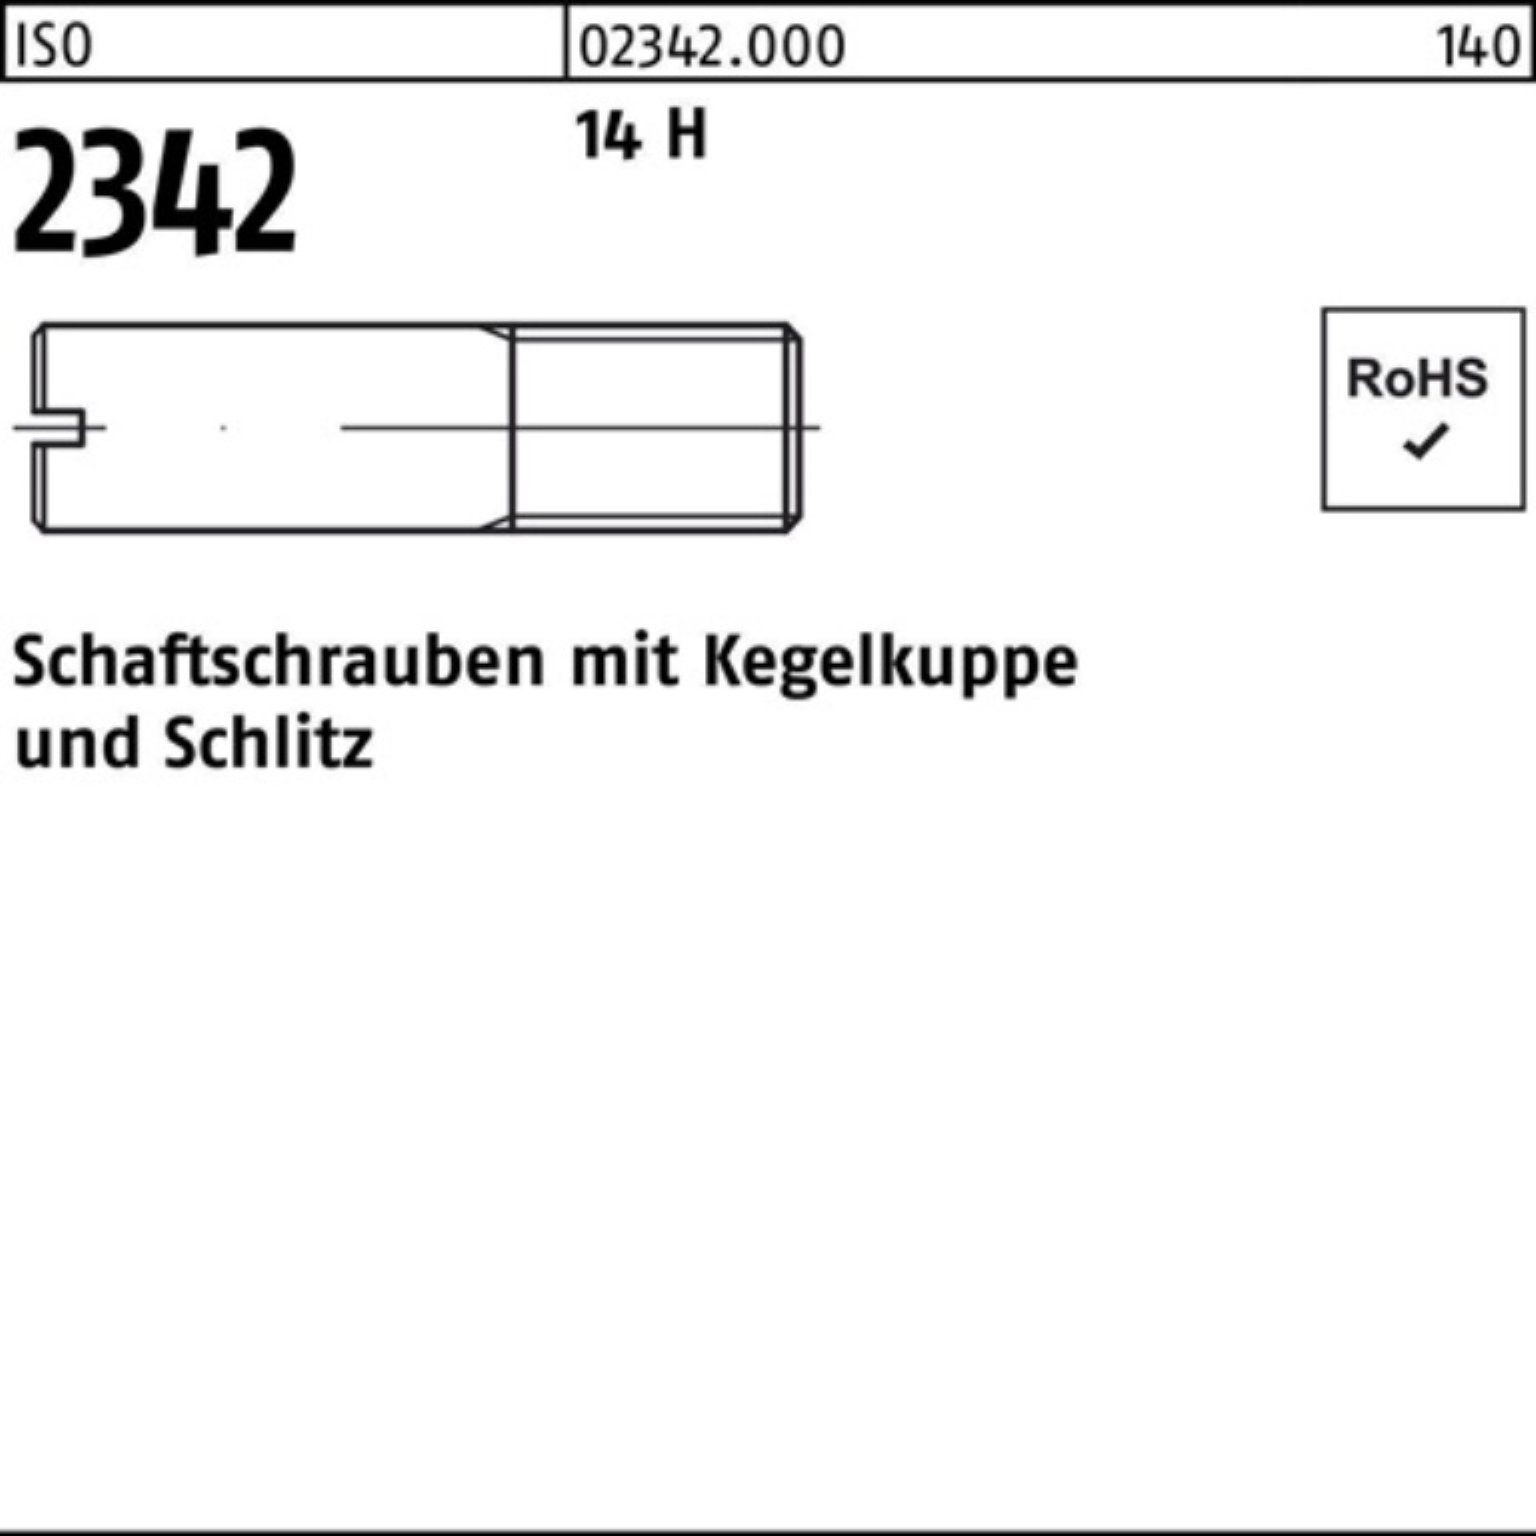 Reyher Schraube 100er Pack Schaftschraube ISO 2342 Kegelkuppe/Schlitz M5x 20 14 H 100